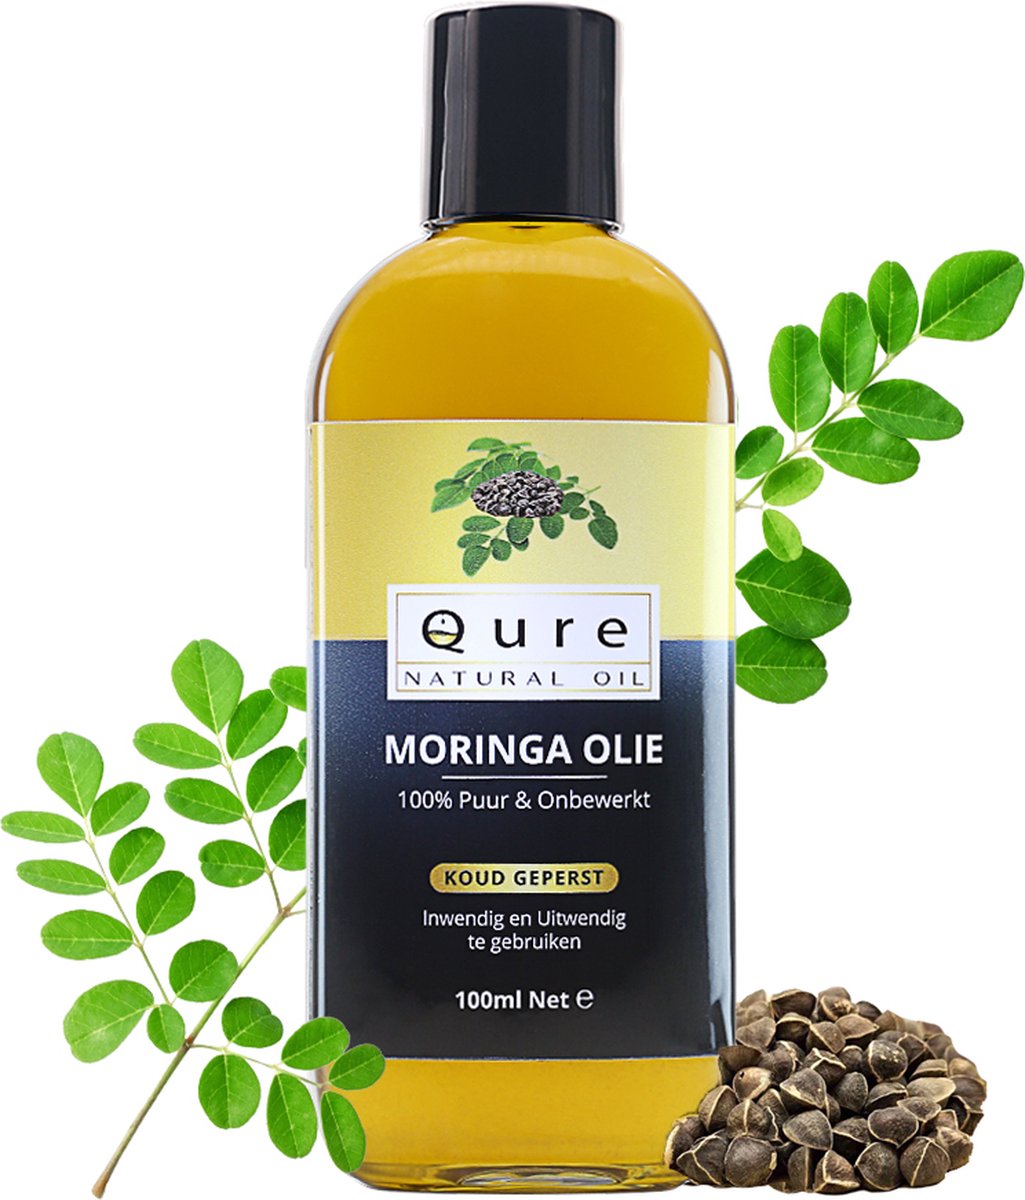 Moringa Olie 100ml | Biologisch | 100% Puur & Onbewerkt | Moringazaadolie voor huid, haar en lichaam